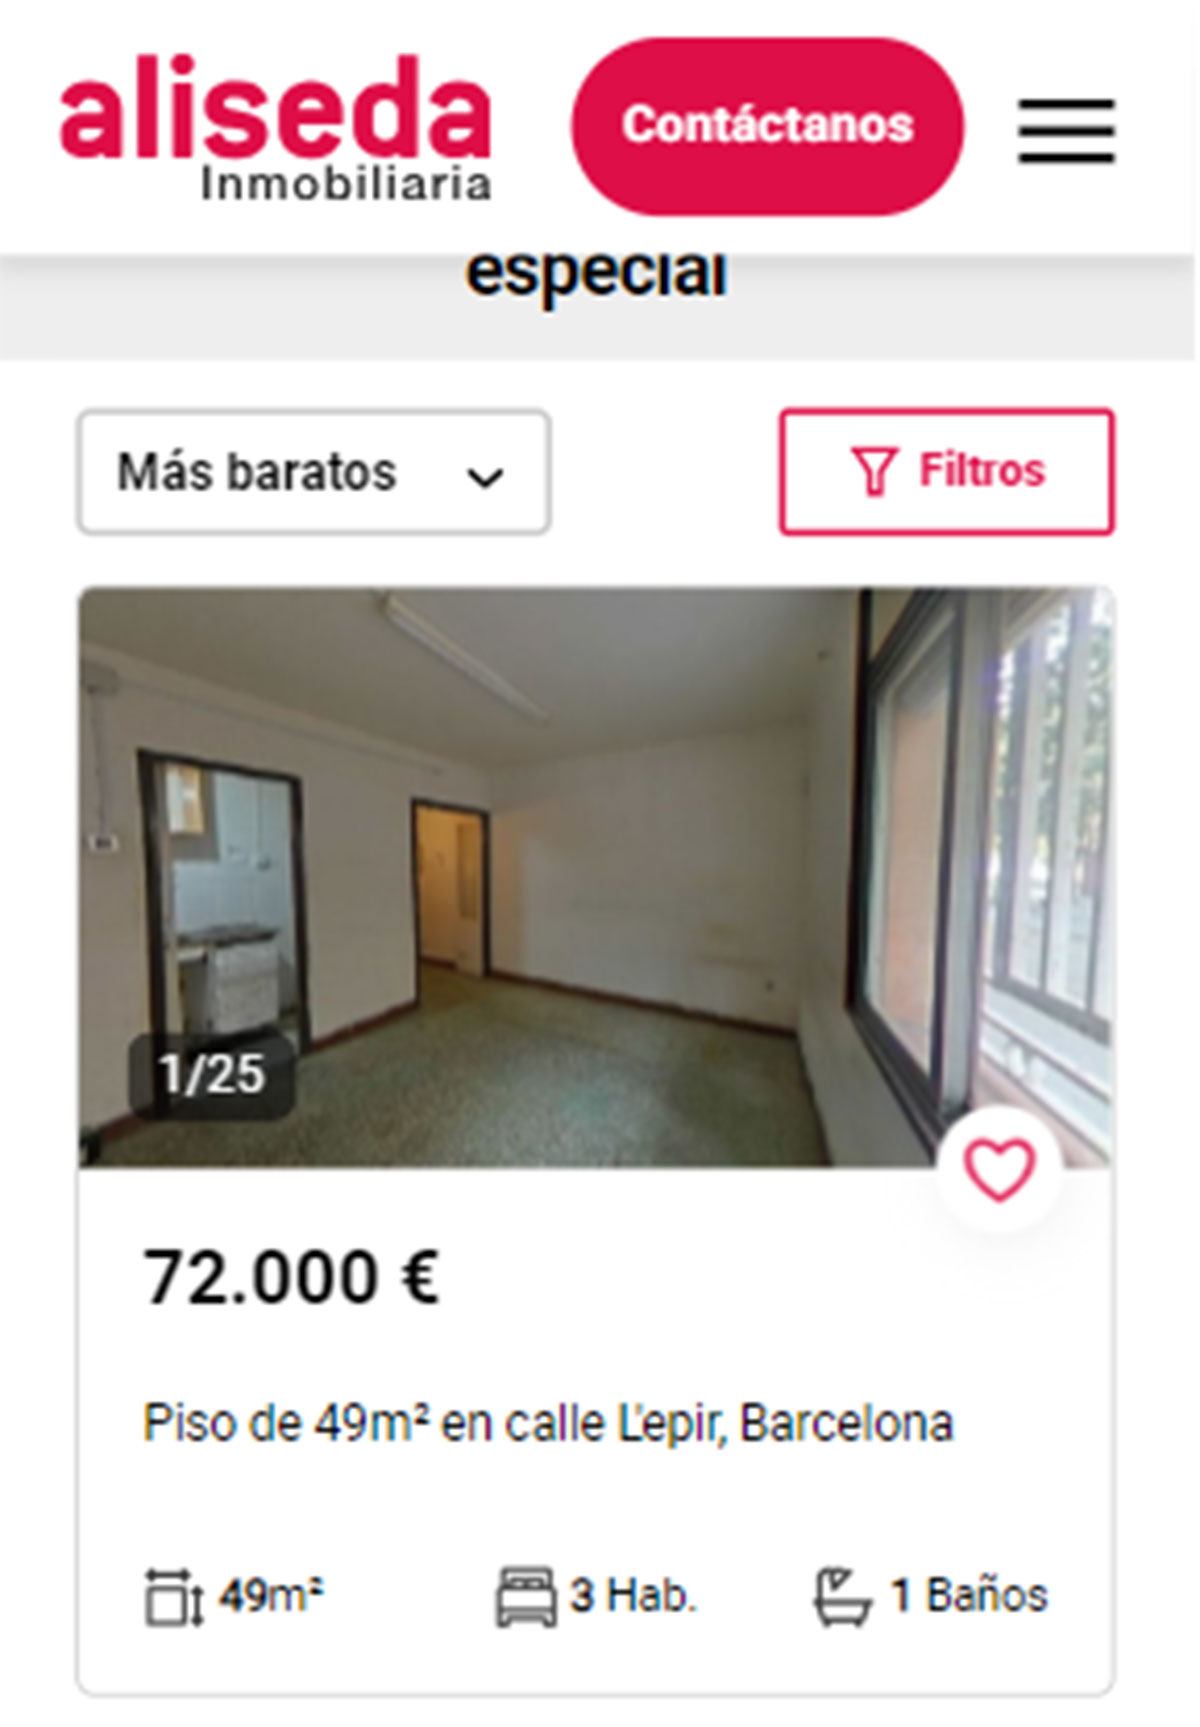 Piso en Barcelona por 72.000 euros